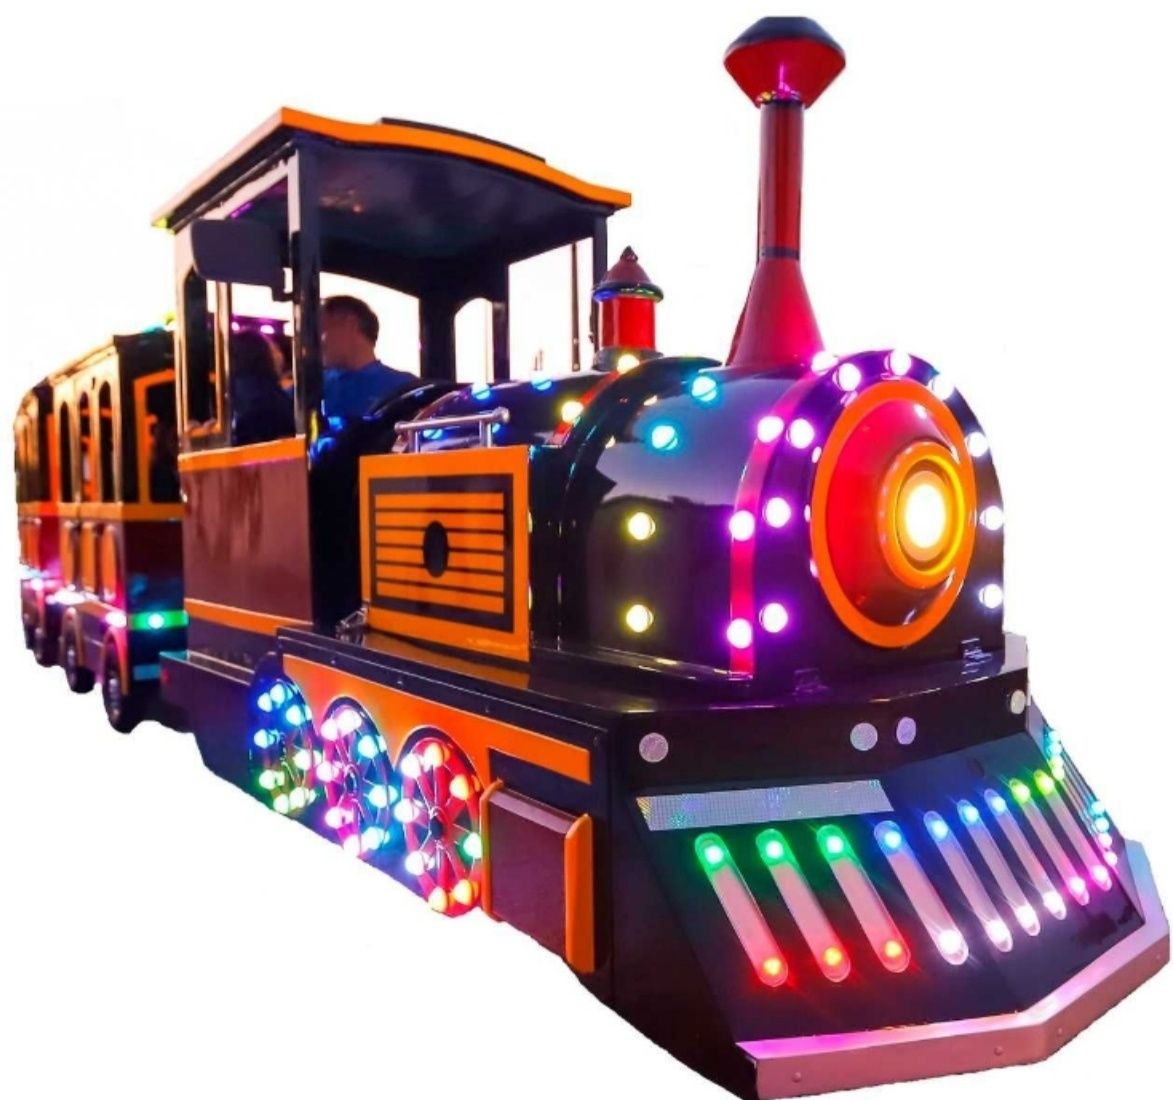 Comboio turístico de Natal